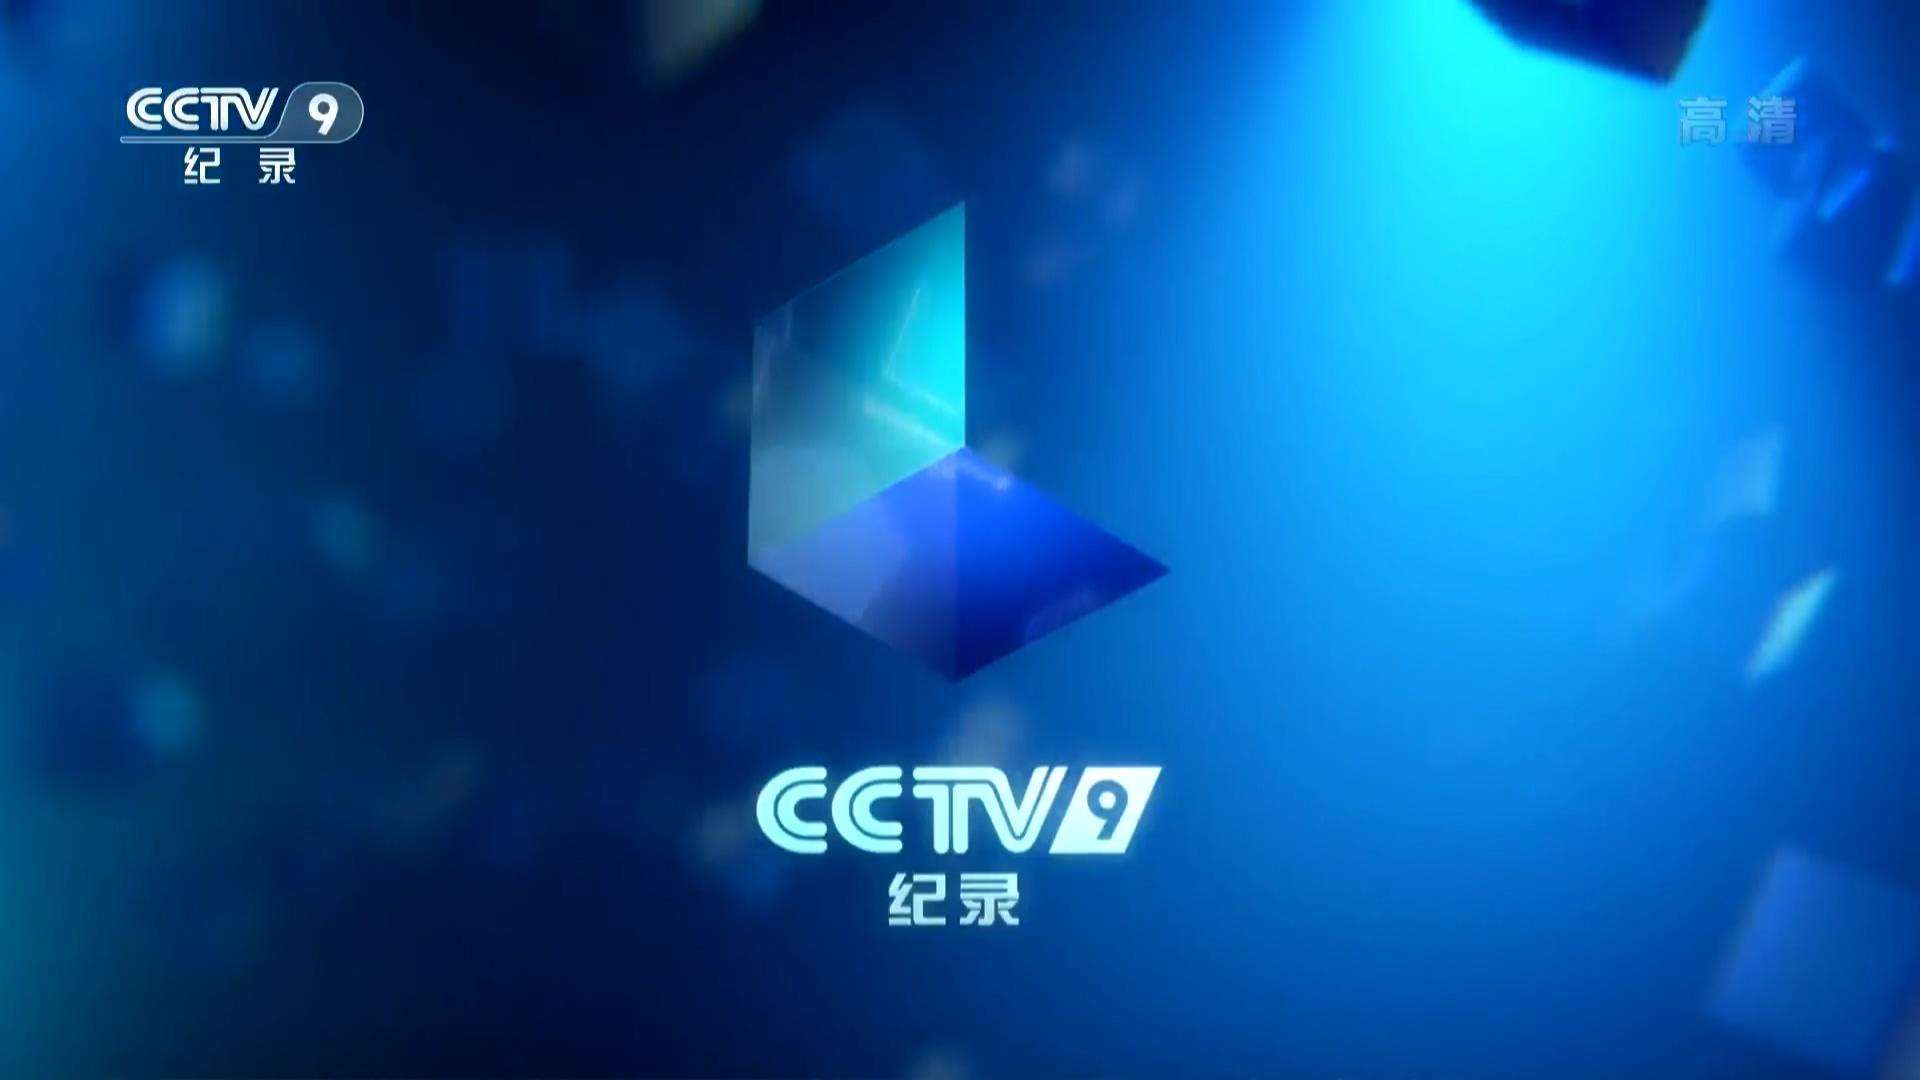 2021年CCTV-9纪录频道时段广告刊例表